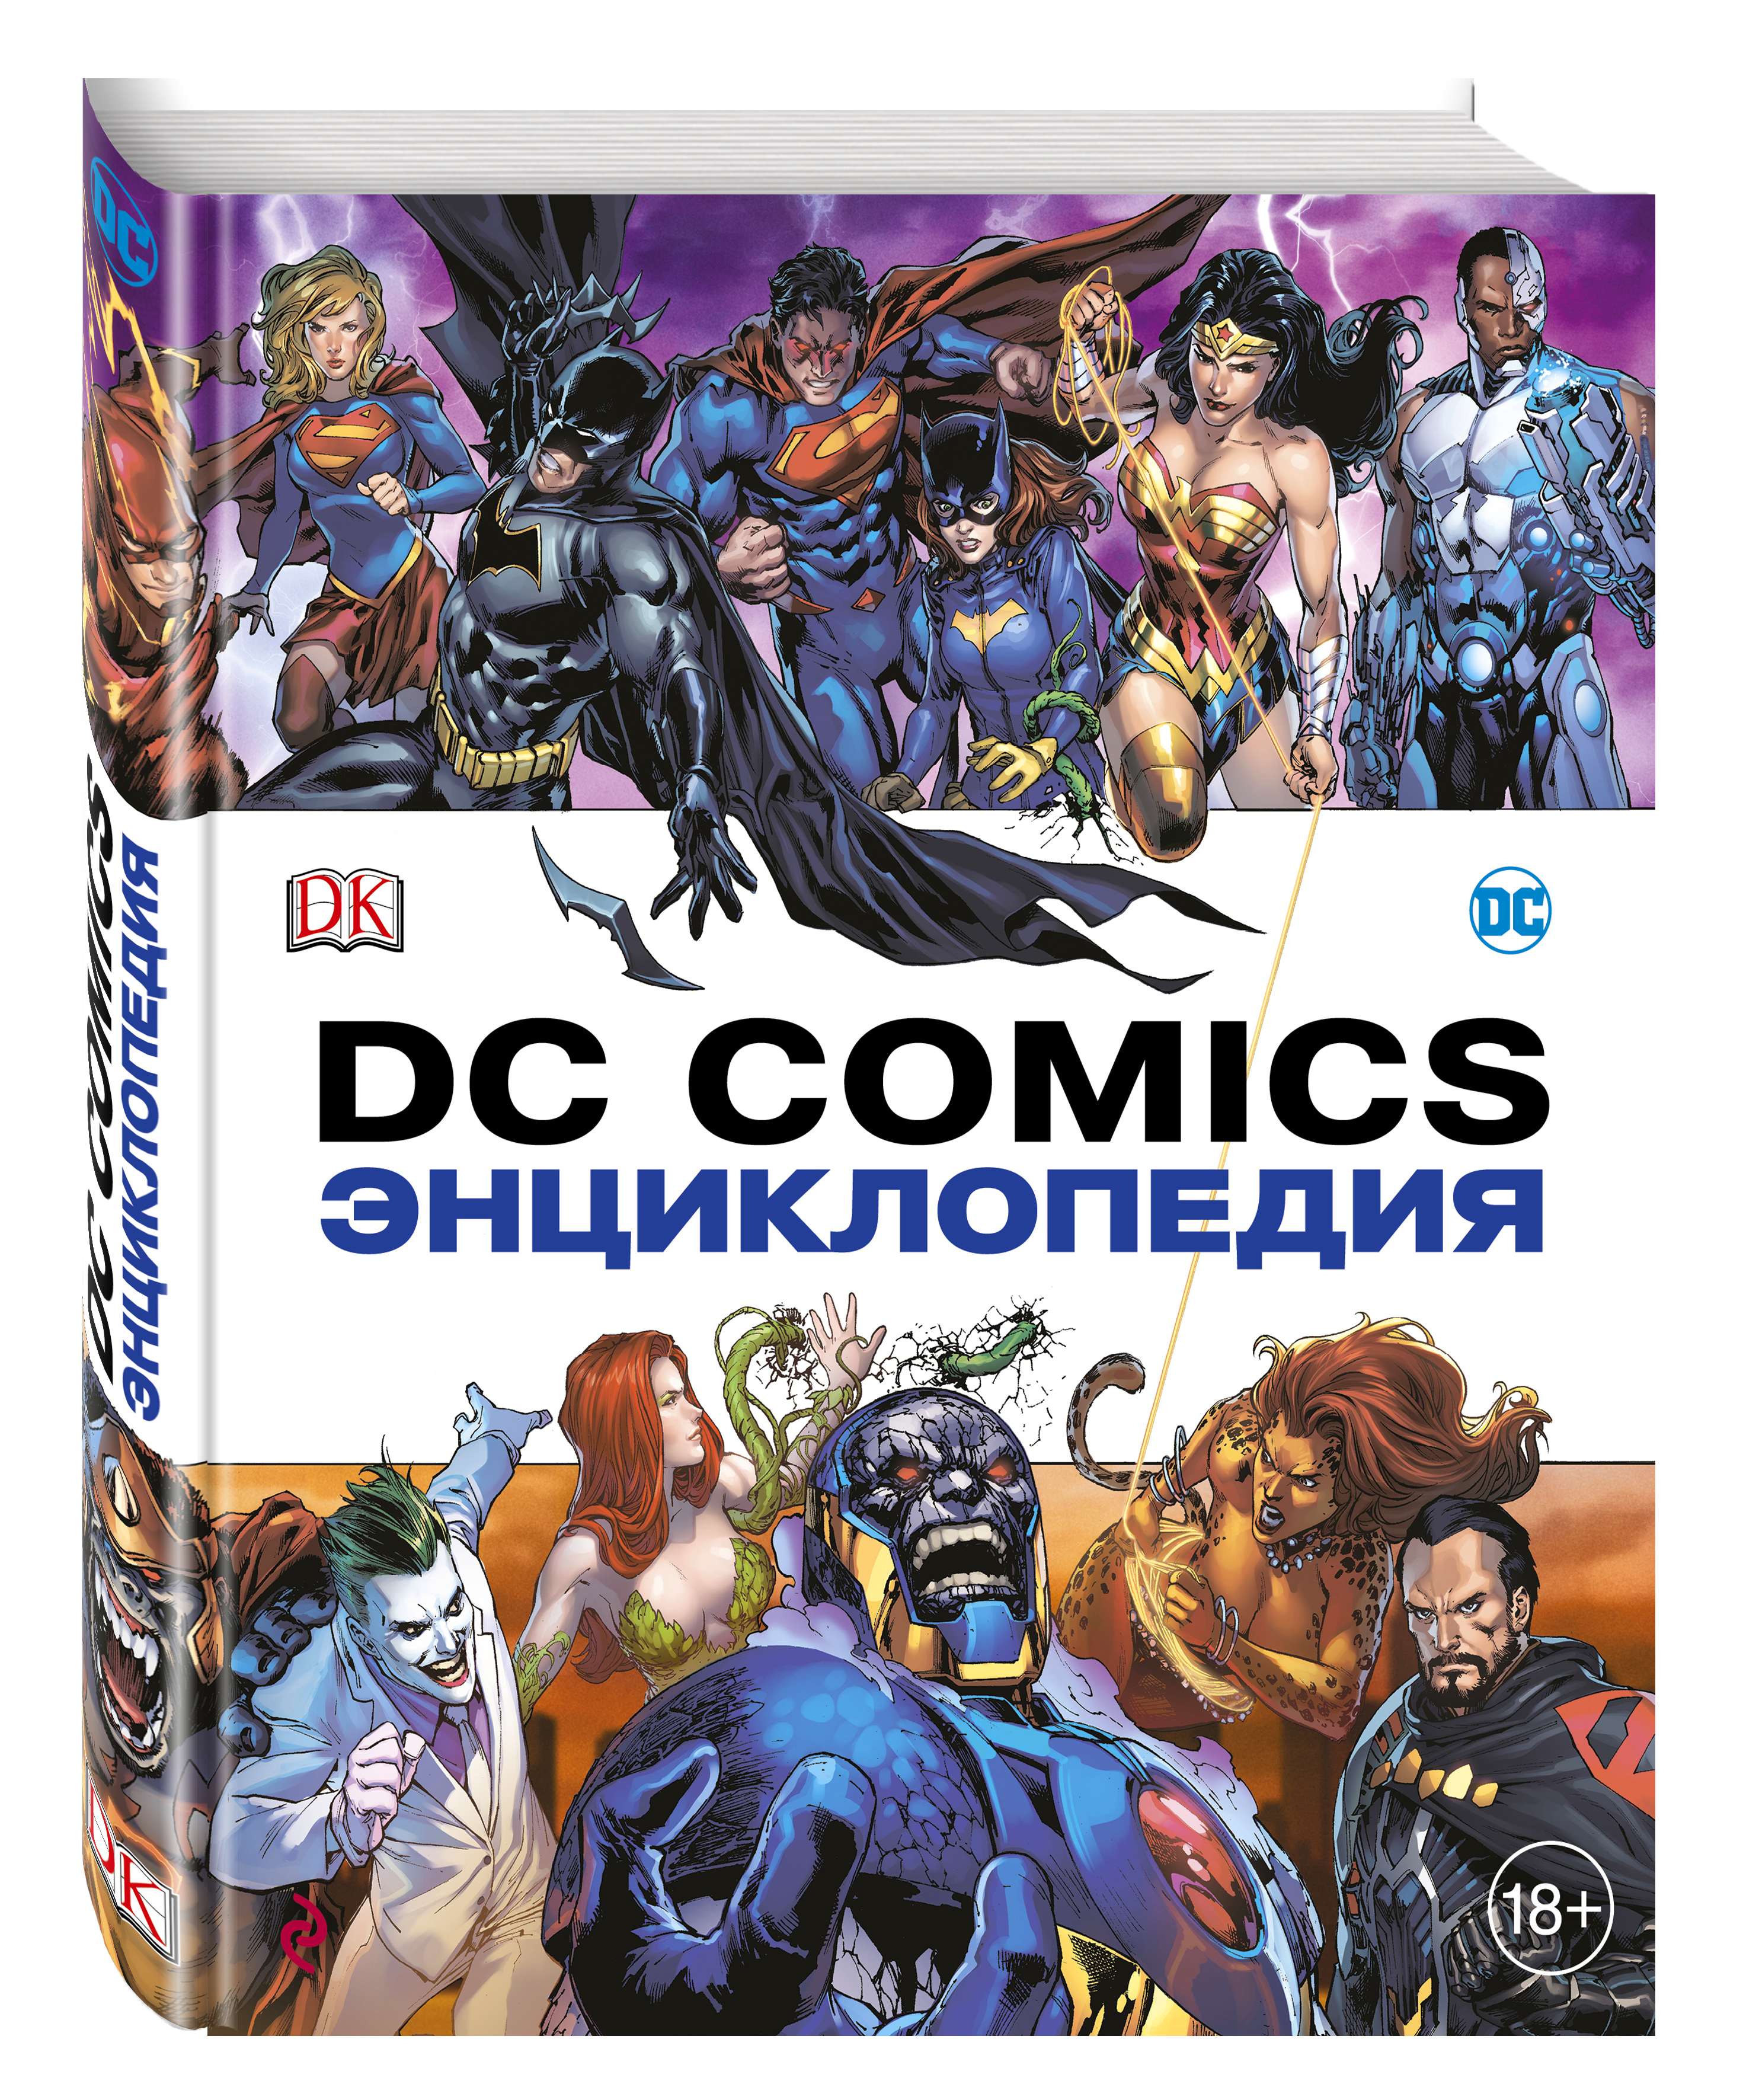  DC Comics